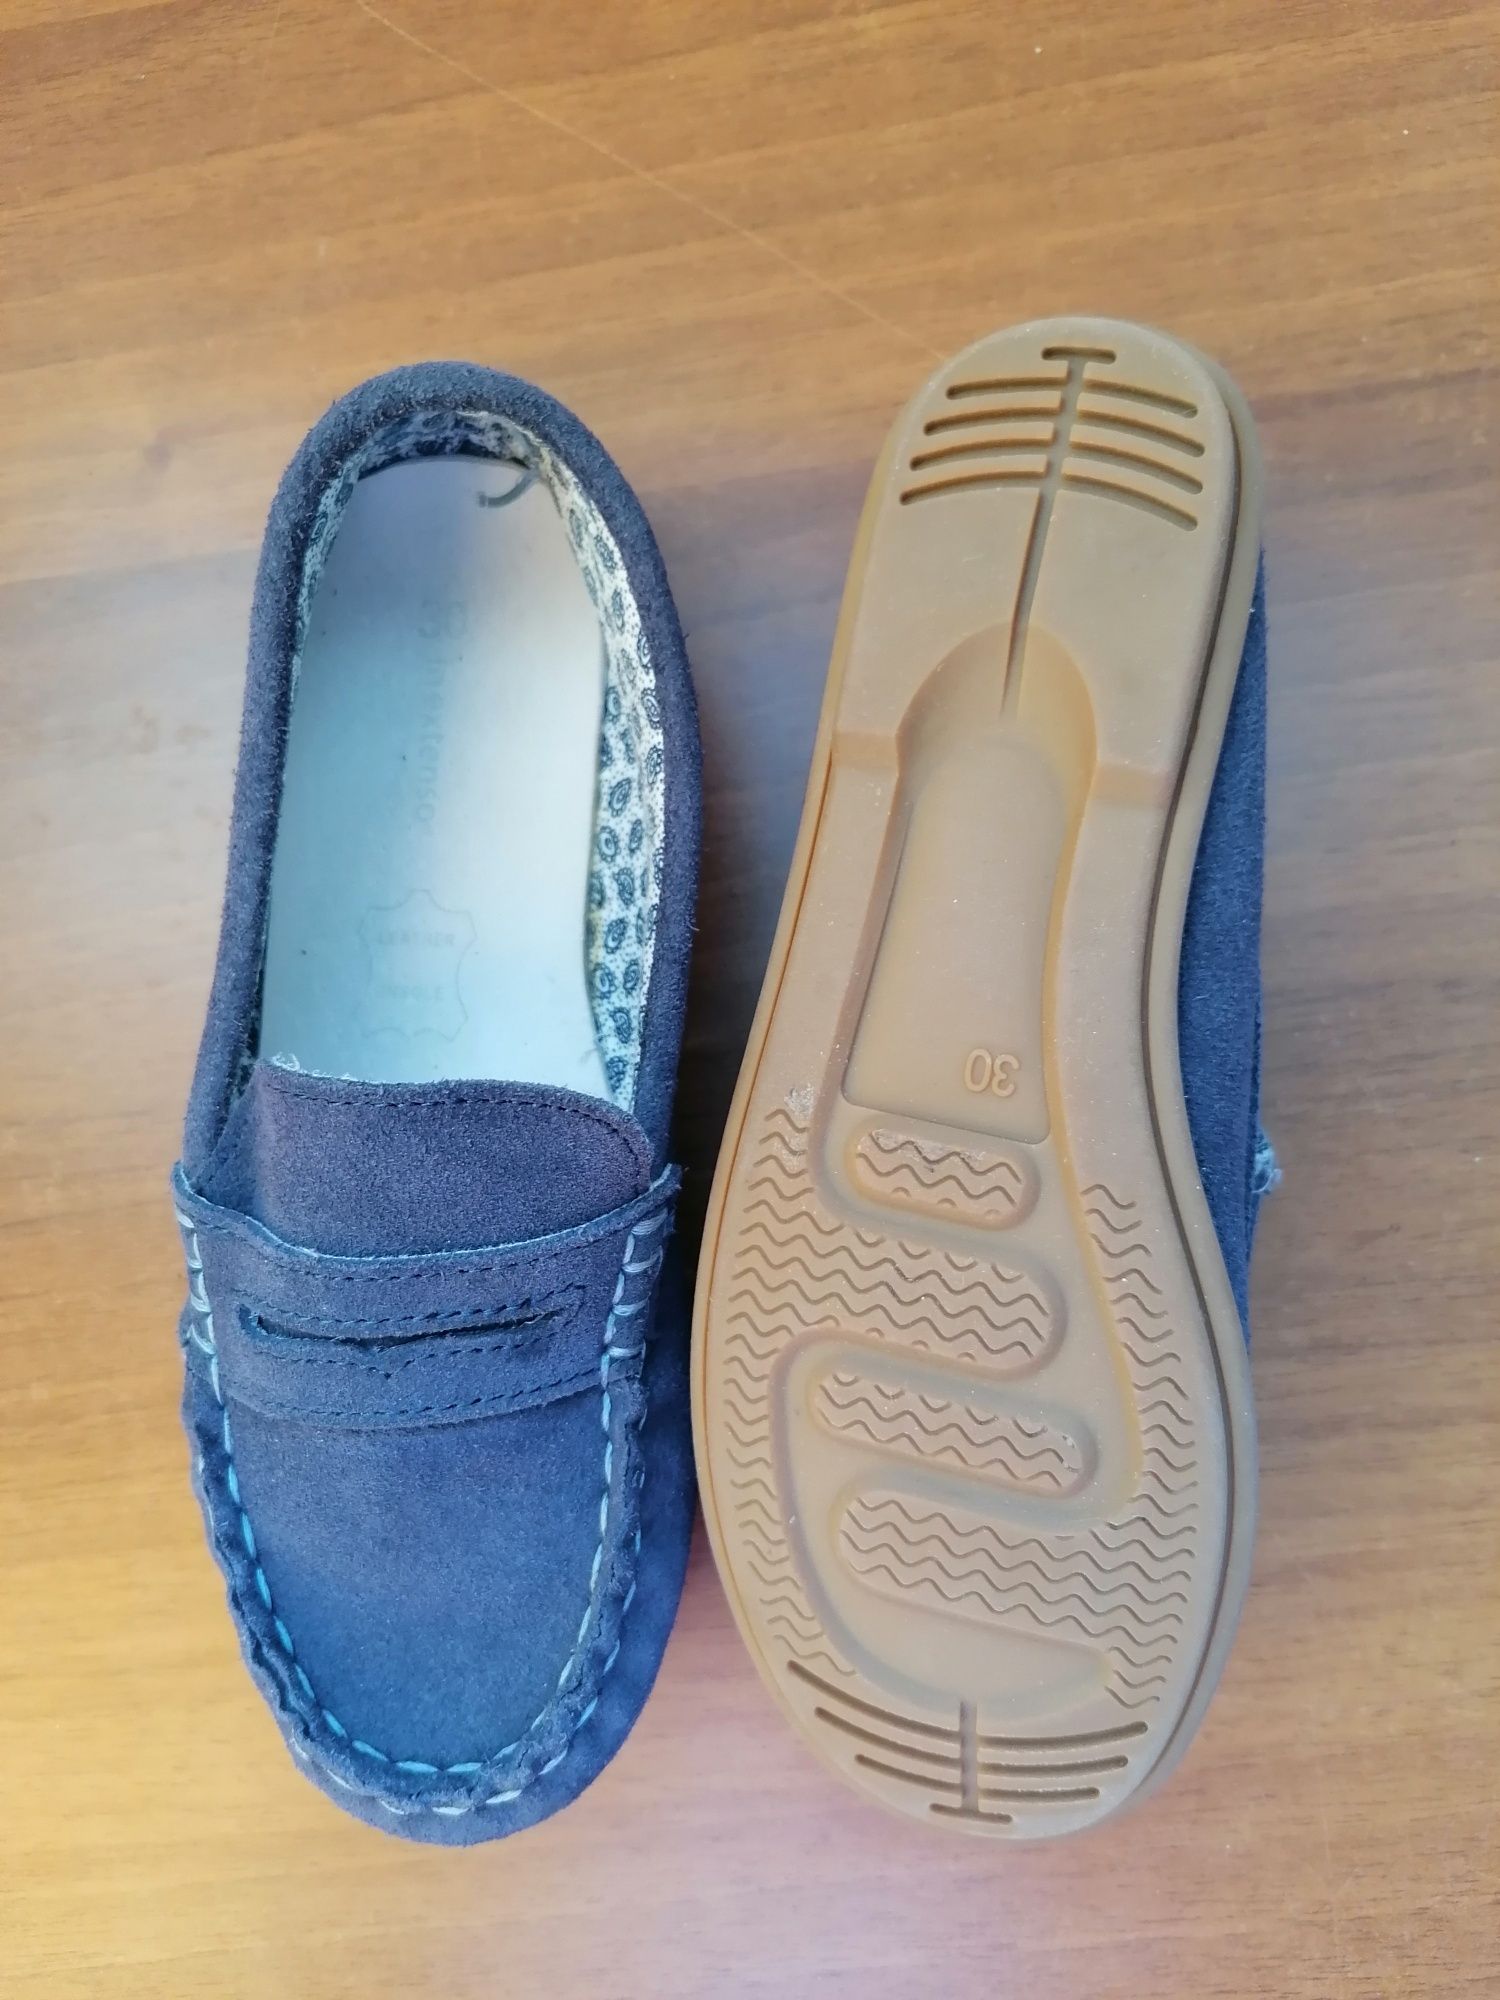 Pantofi noi din piele, m 30, bleumarin Inextenso